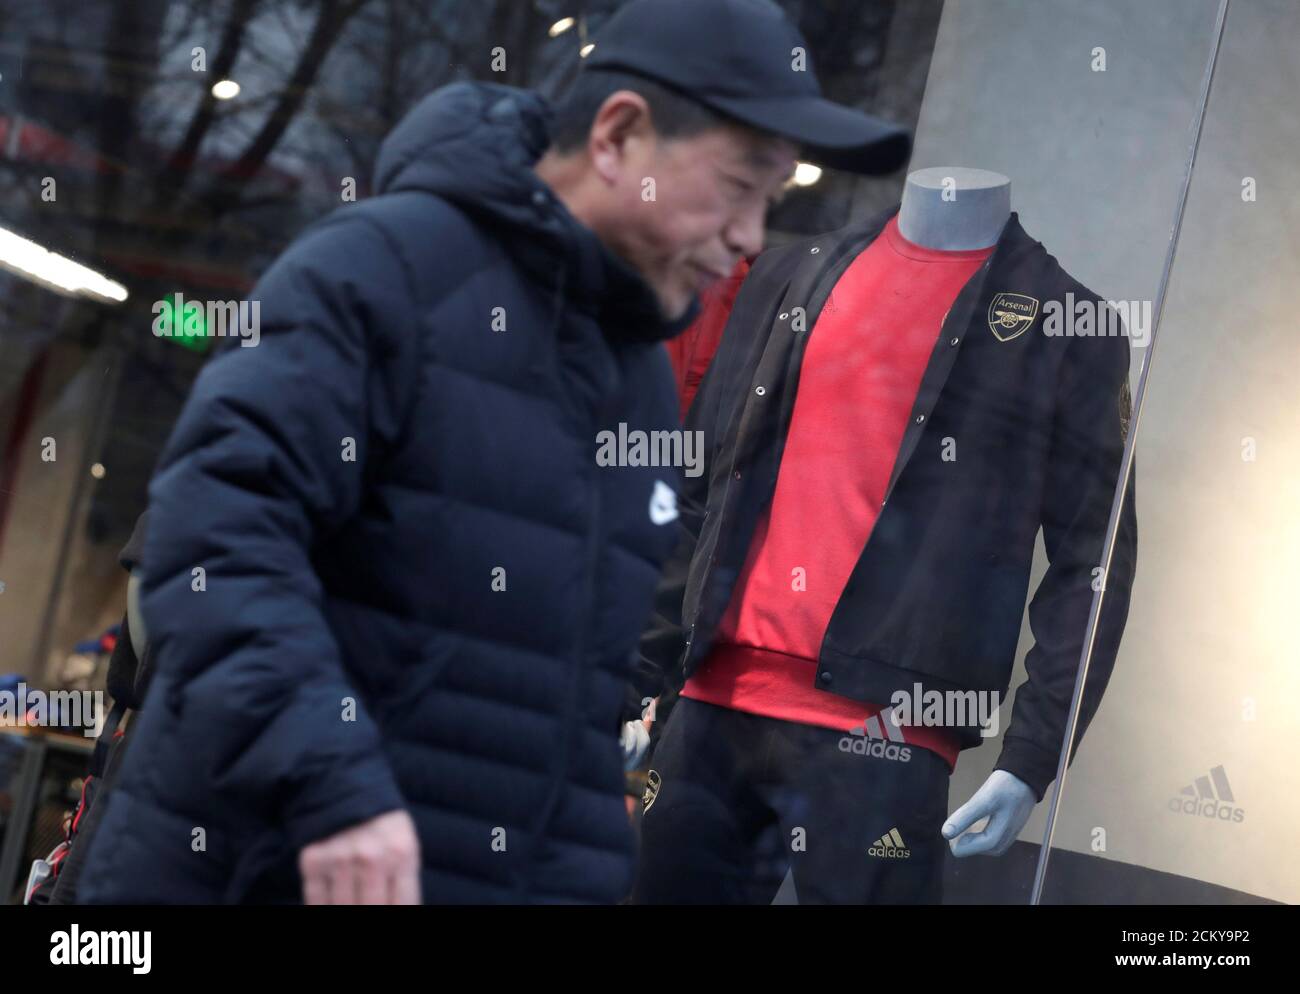 Un hombre pasa por una ventana de la tienda Adidas donde un modelo está  vestido con ropa deportiva con el logotipo del Arsenal del club de fútbol  inglés, en Beijing, China 16